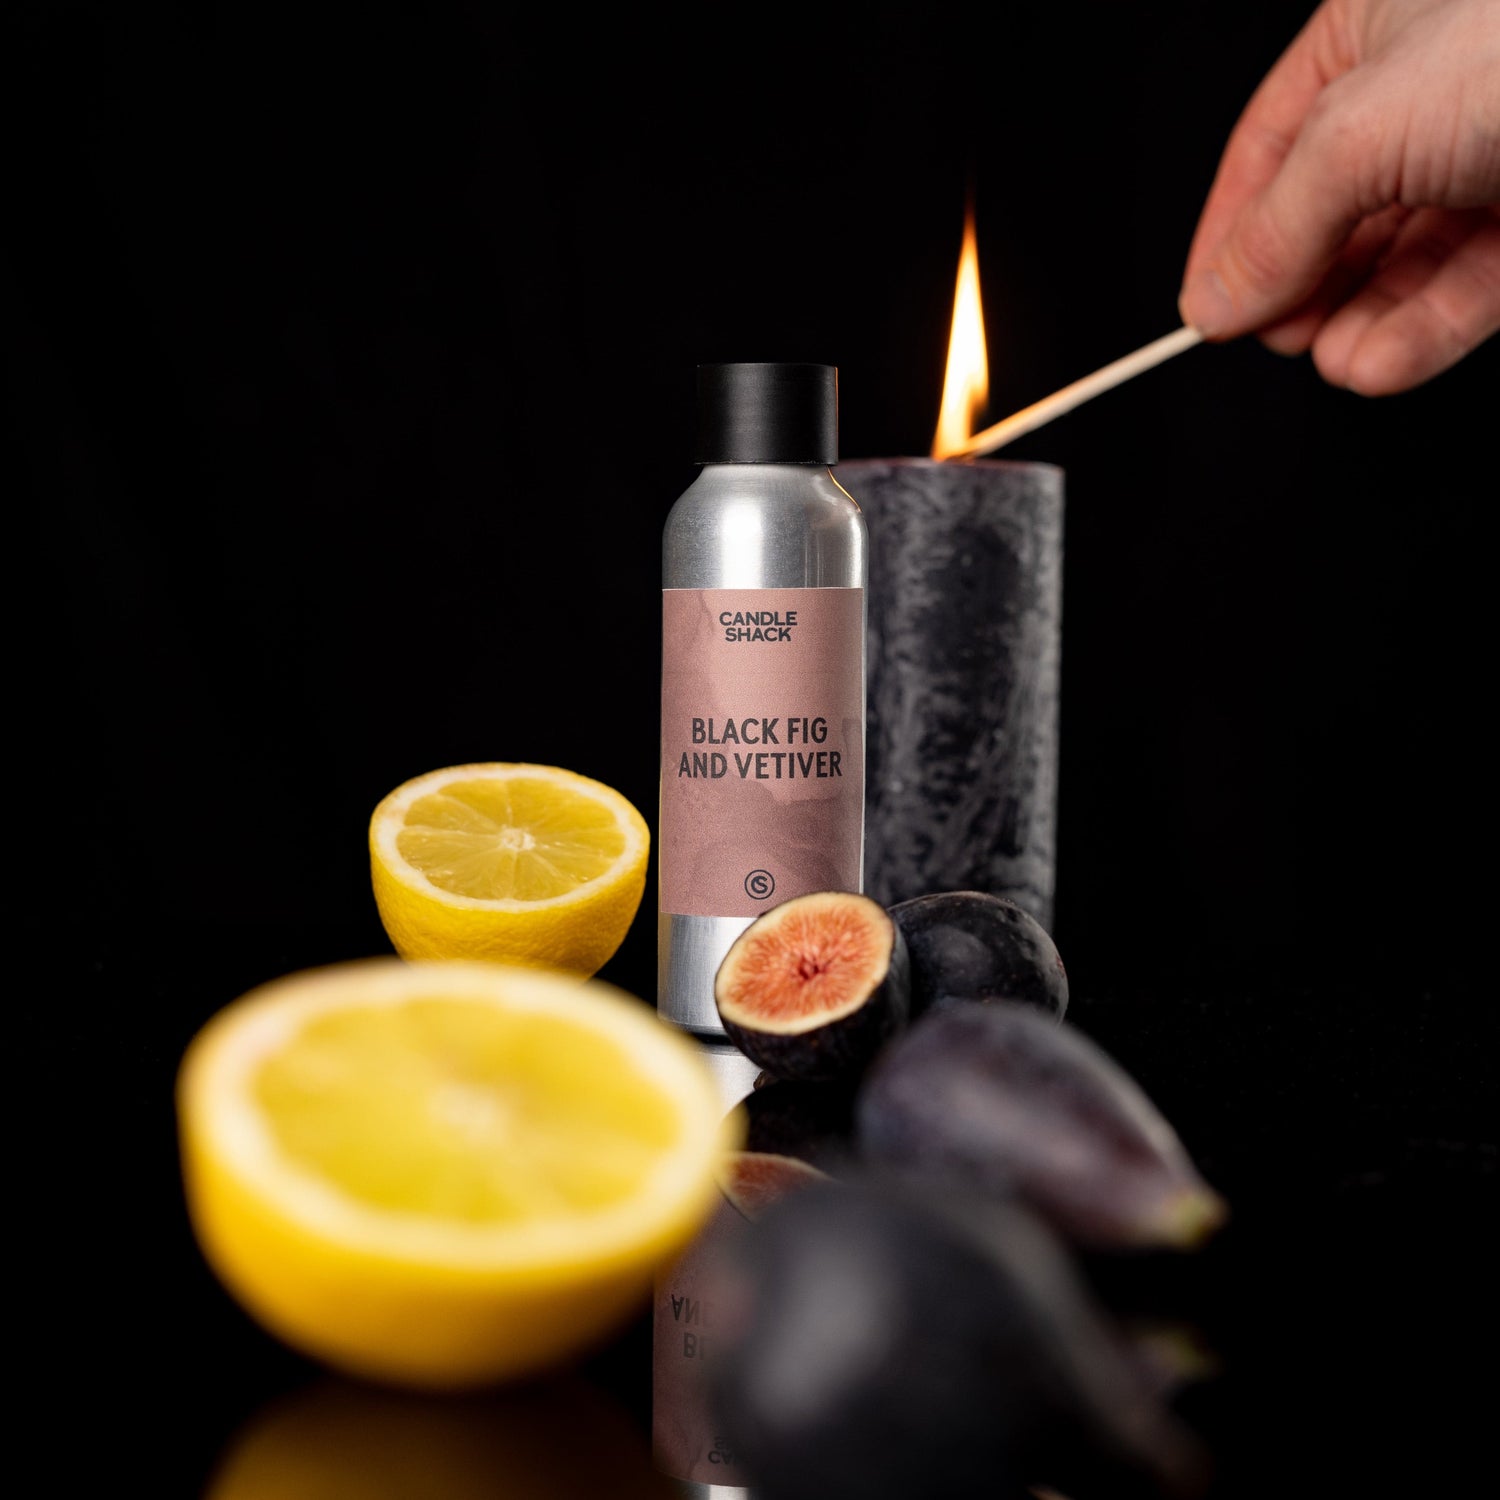 Candle Shack Fragrance New Black Fig & Vetiver Candle Fragrance Oil